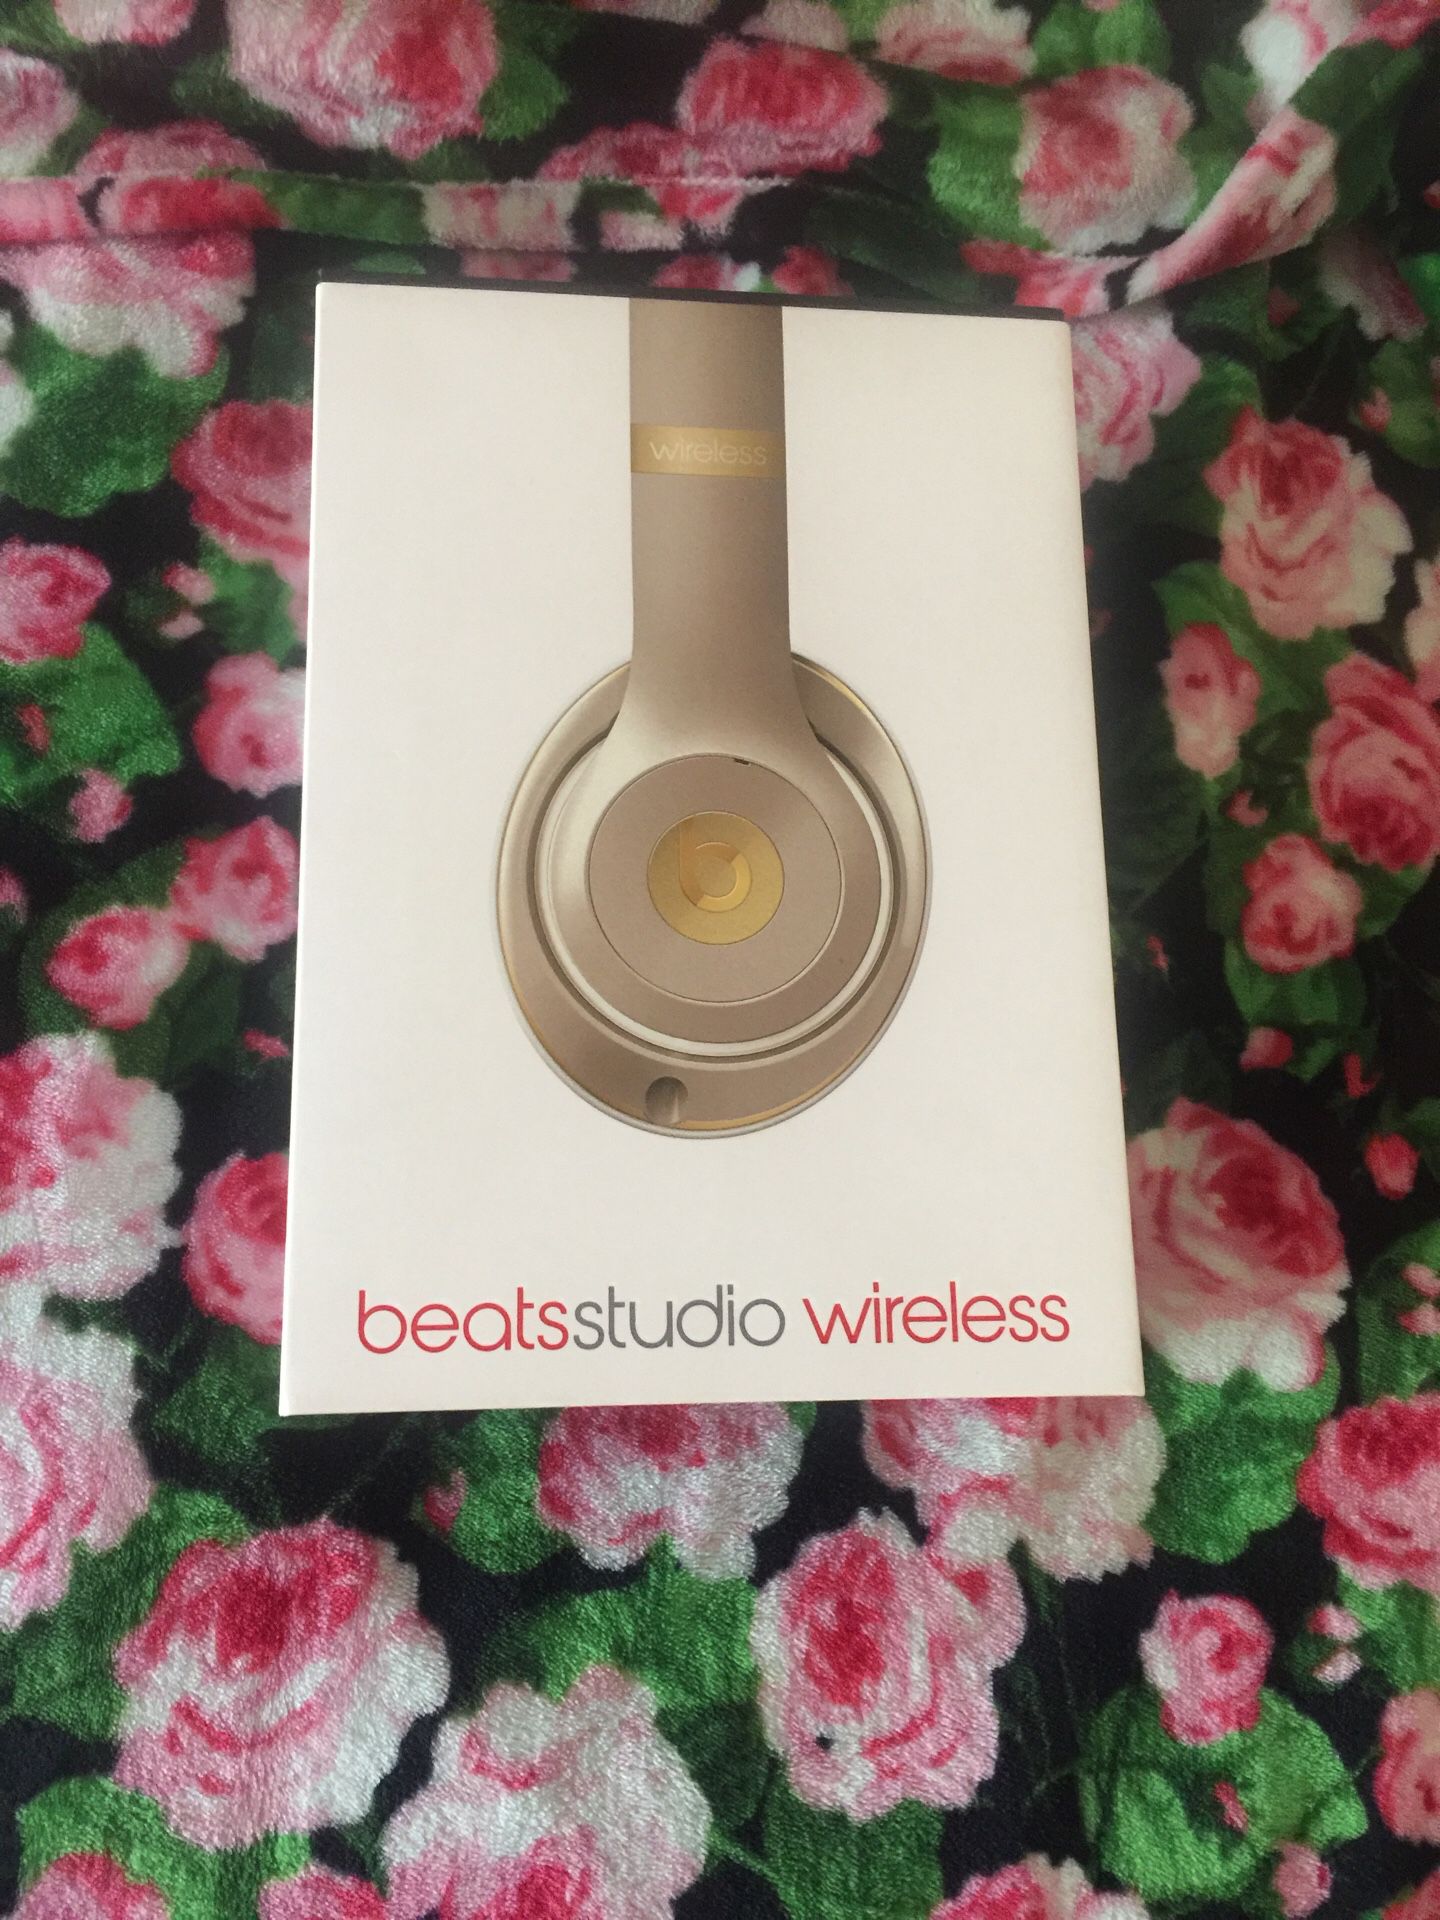 Beats studio wireless headphones